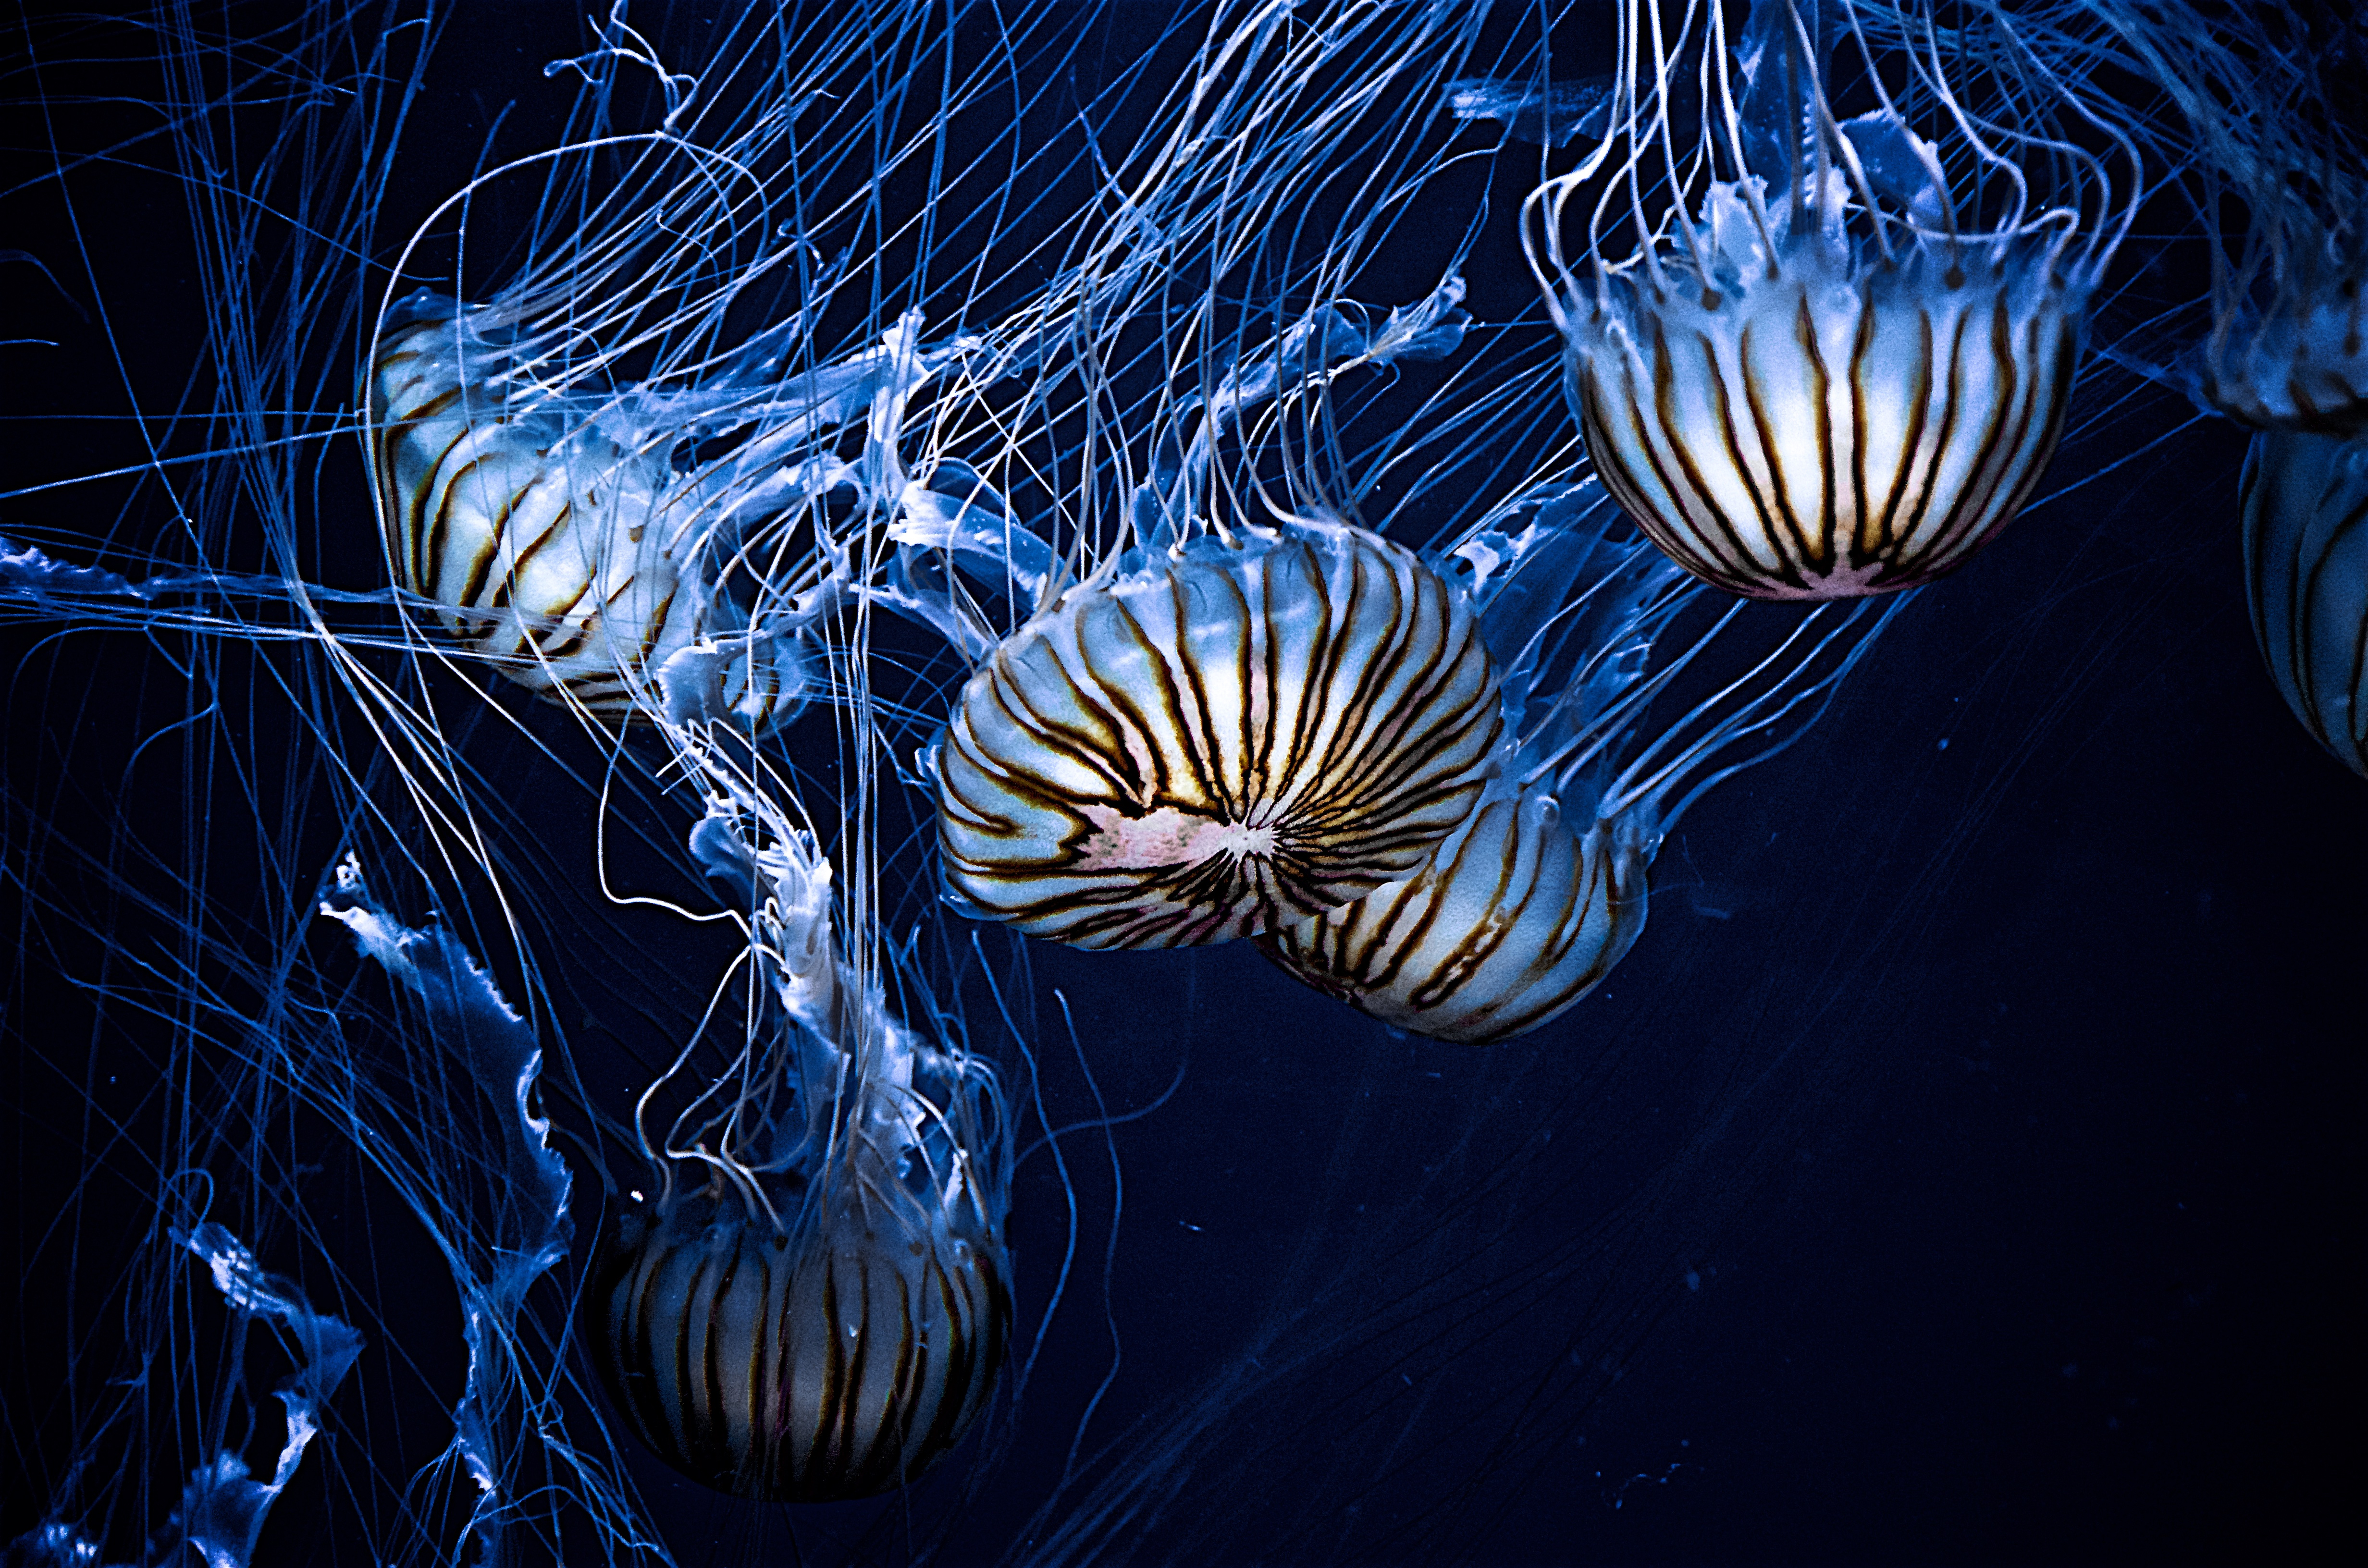 Jellyfish Sea Life Underwater 4928x3264